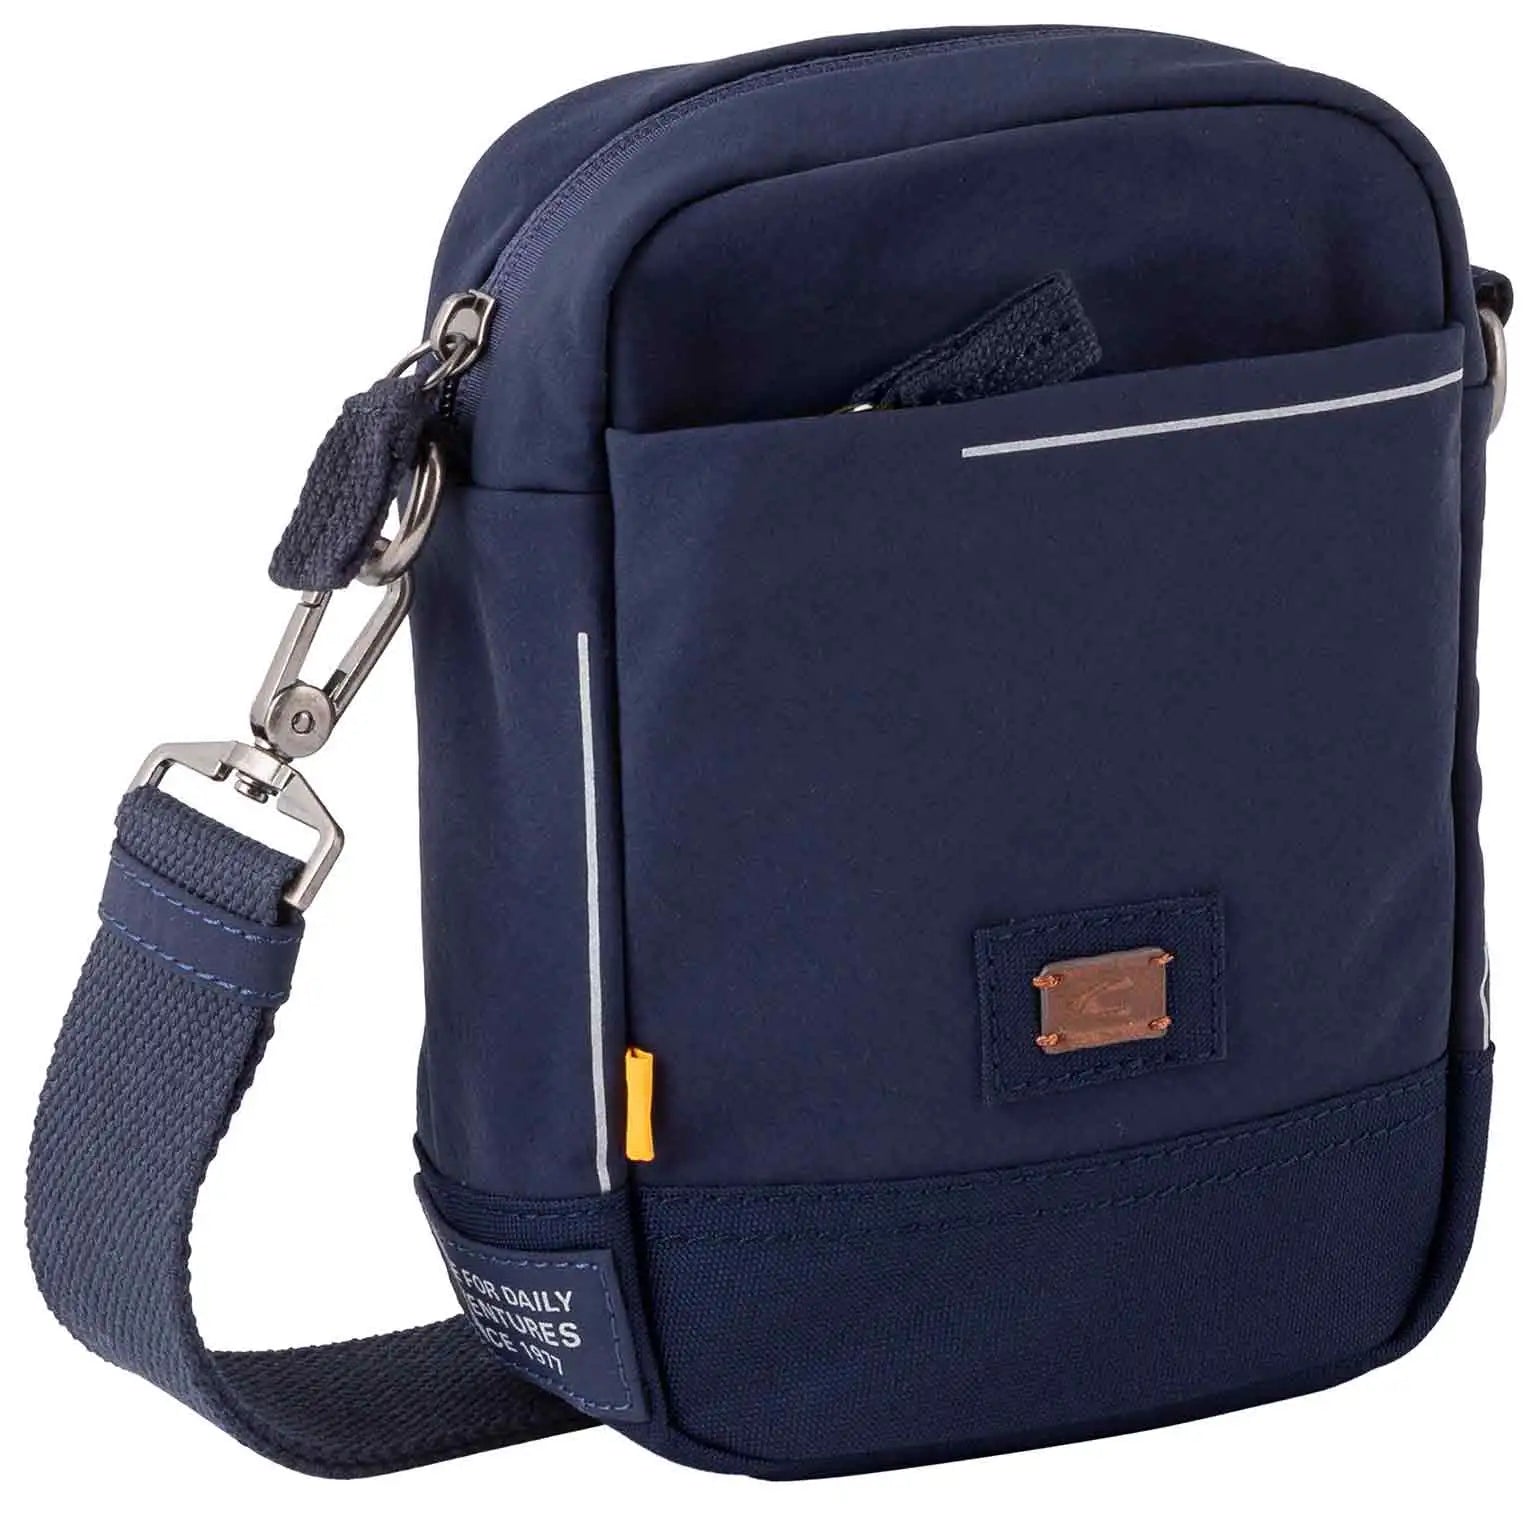 Camel Active City Shoulder Bag XS 21 cm - Dark Blue